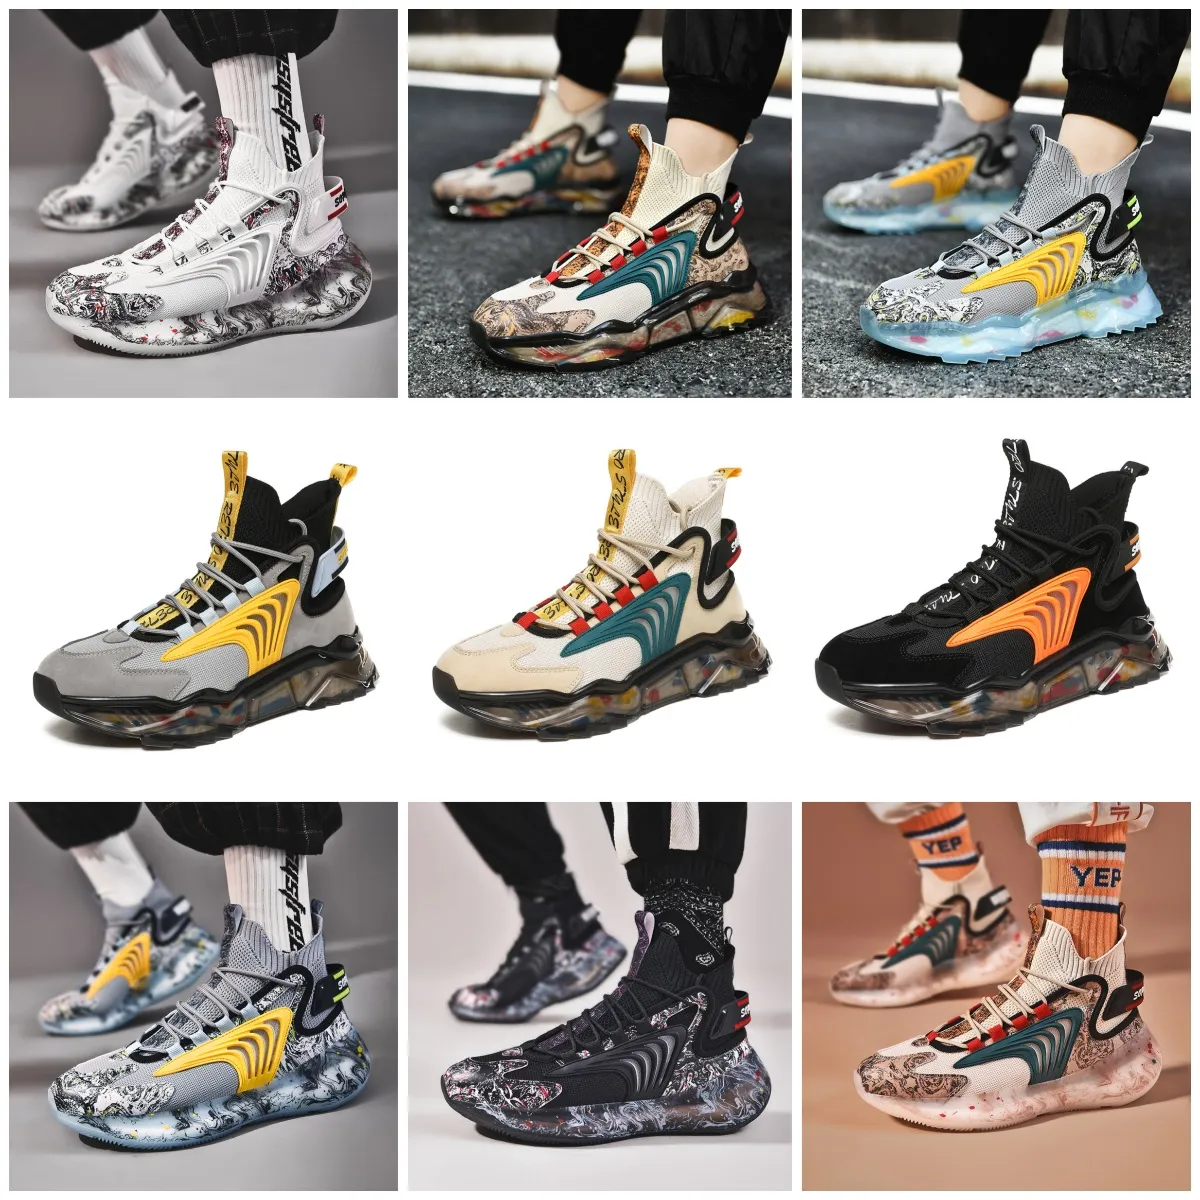 Chaussures de sport GAI Outdoors Mans Shoes Nouvelles chaussures de sport de randonnée antidérapantes résistantes à l'usure chaussures d'entraînement de randonnée chaussures de haute qualité pour hommes Sneaker softy confort ventiler